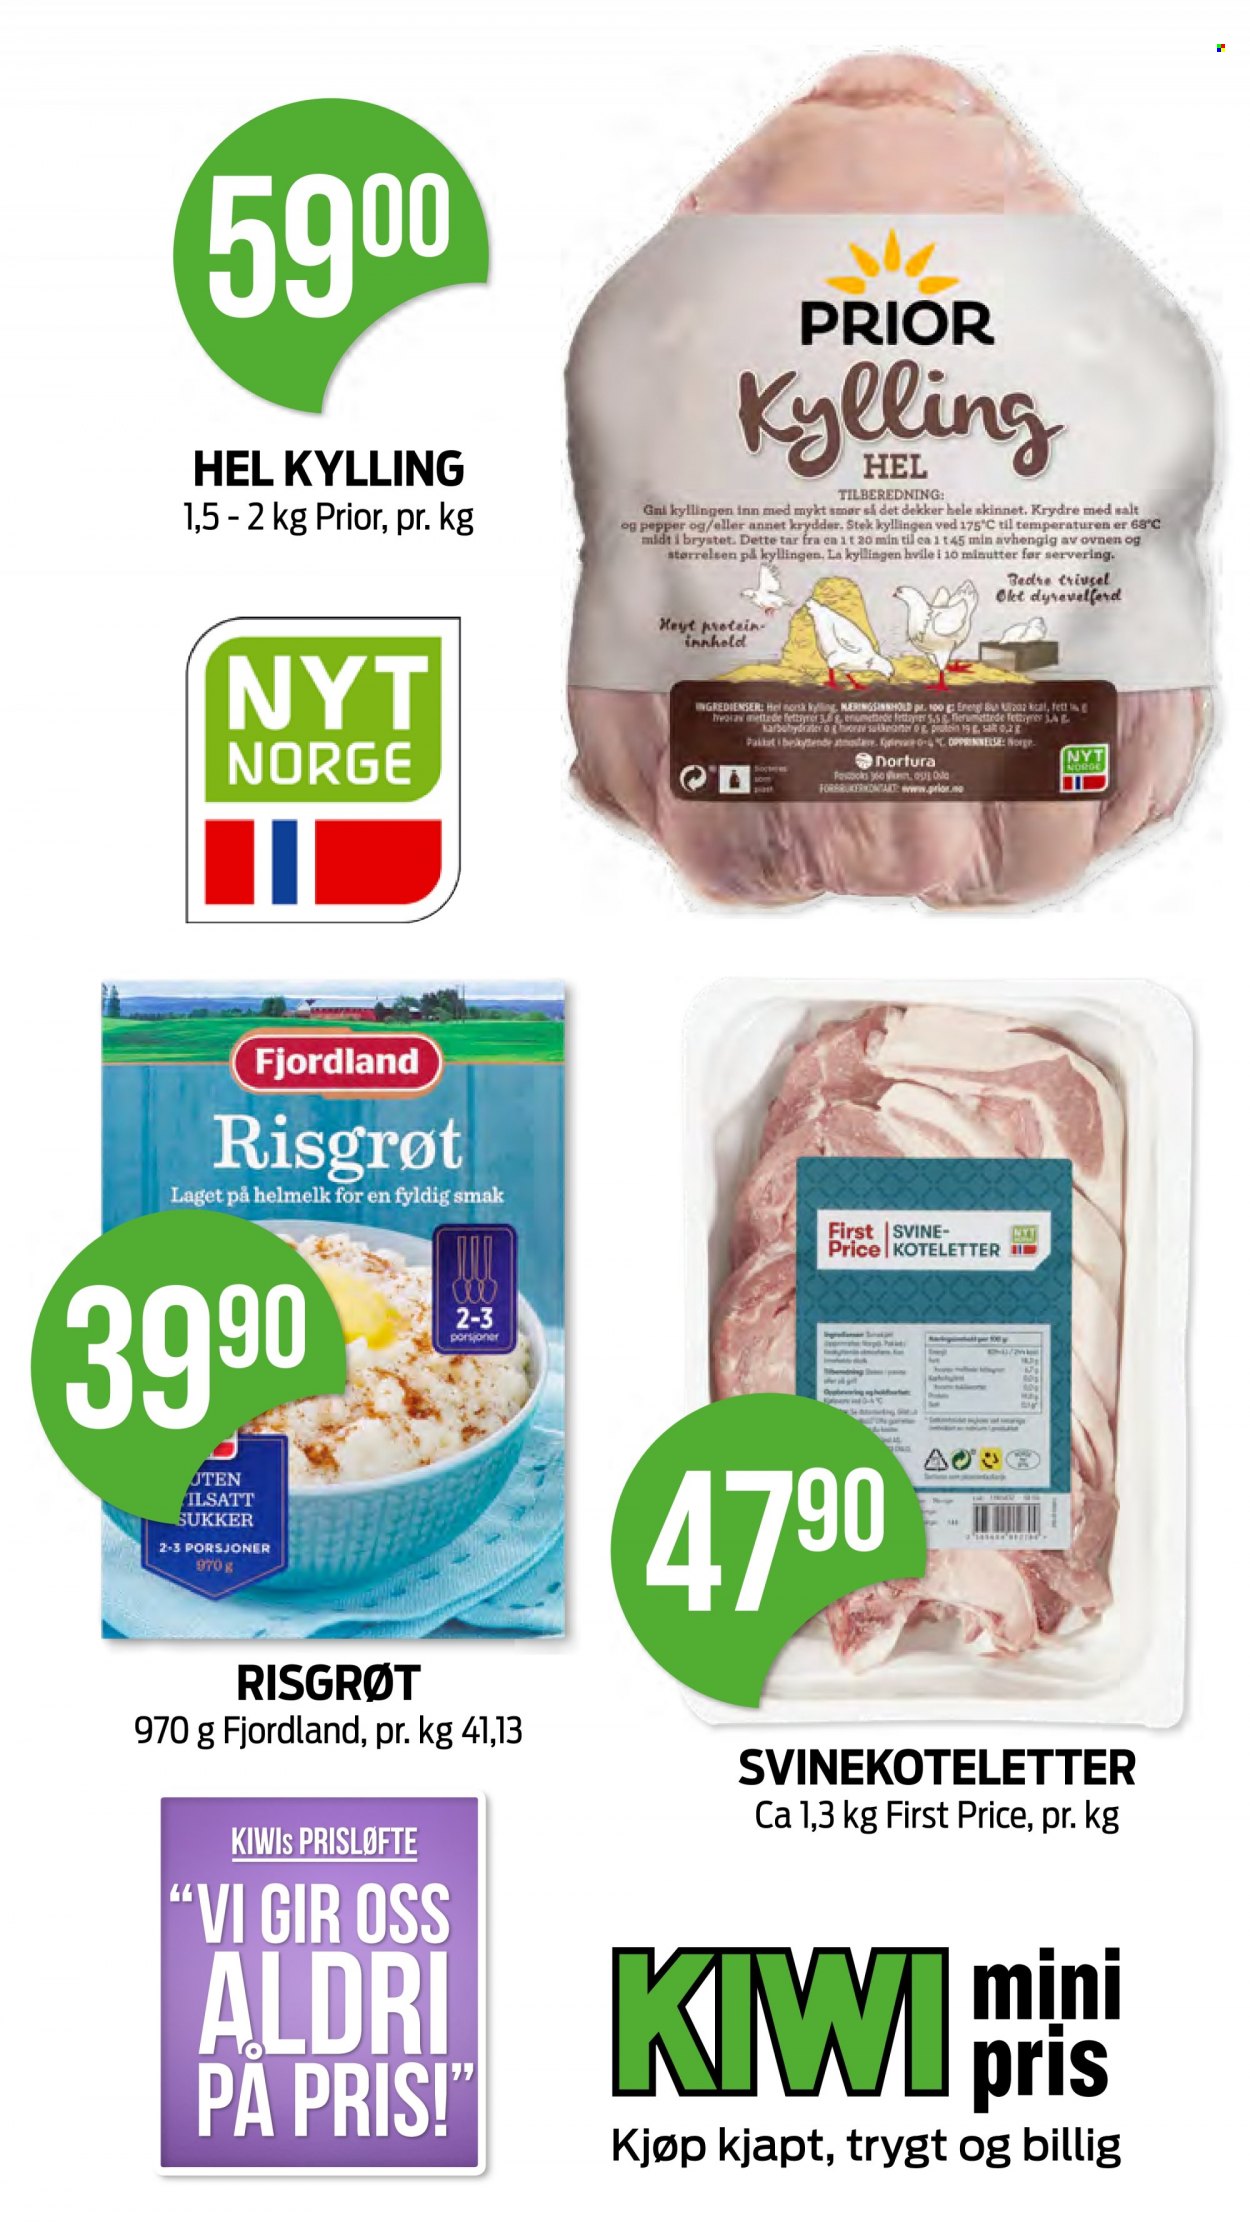 thumbnail - Kundeavis KIWI - 13.9.2021 - 19.9.2021 - Produkter fra tilbudsaviser - hel kylling, svinekoteletter, øl, smør, Fjordland, sukker. Side 7.